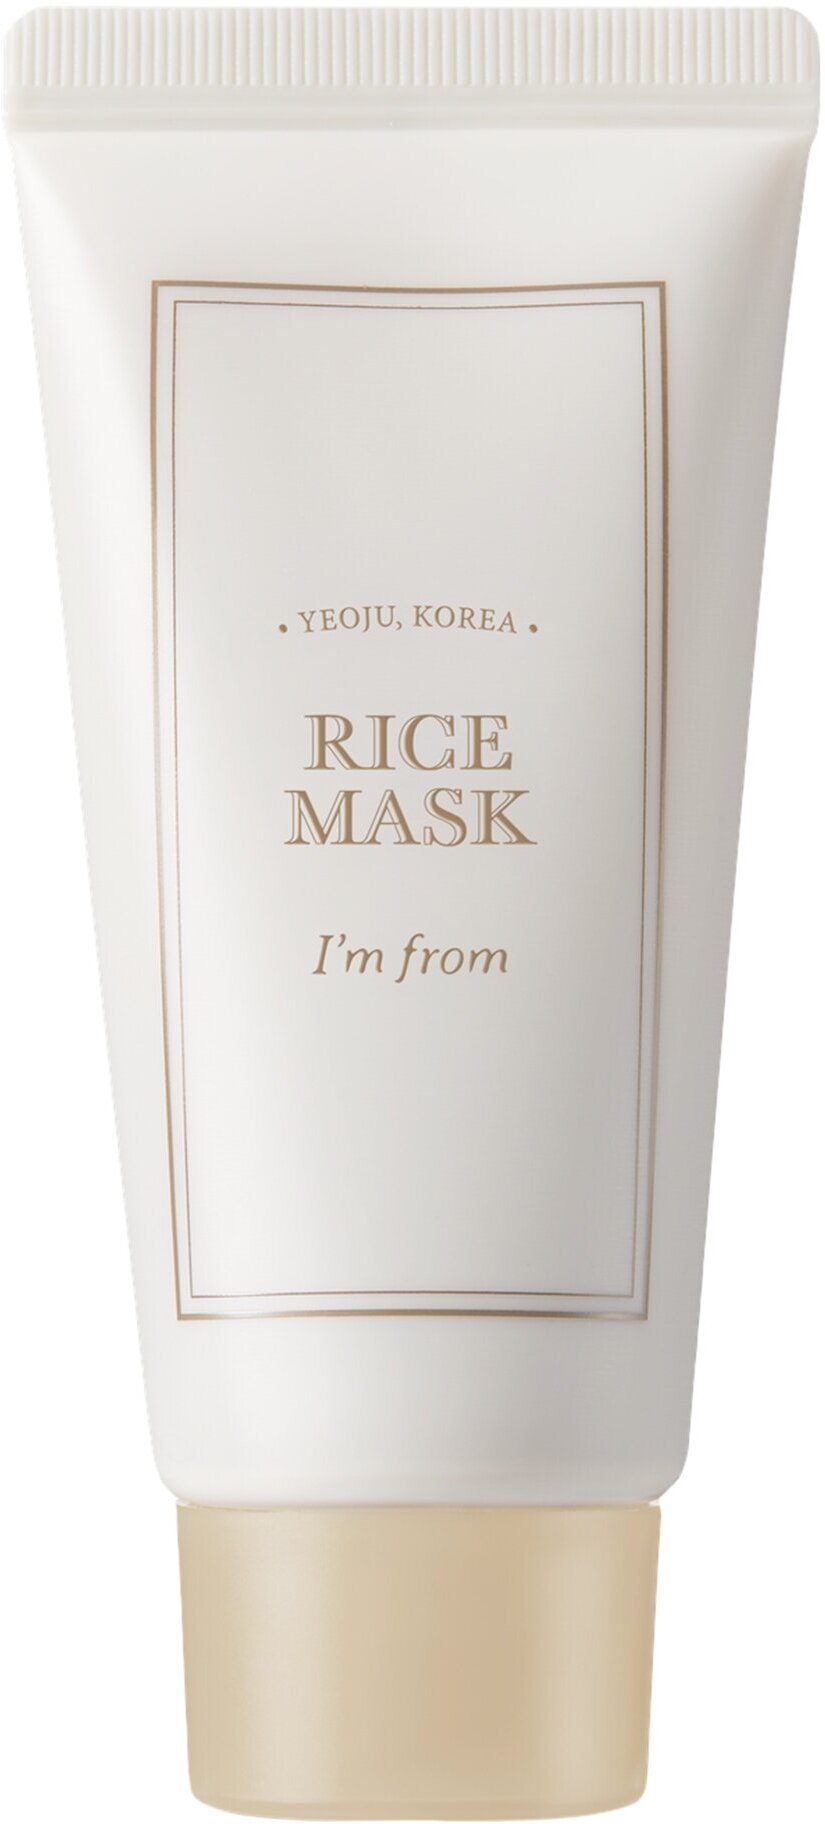 I’m from Смягчающая маска-скраб для лица с рисовыми отрубями Rice Mask в дорожном формате 30 гр